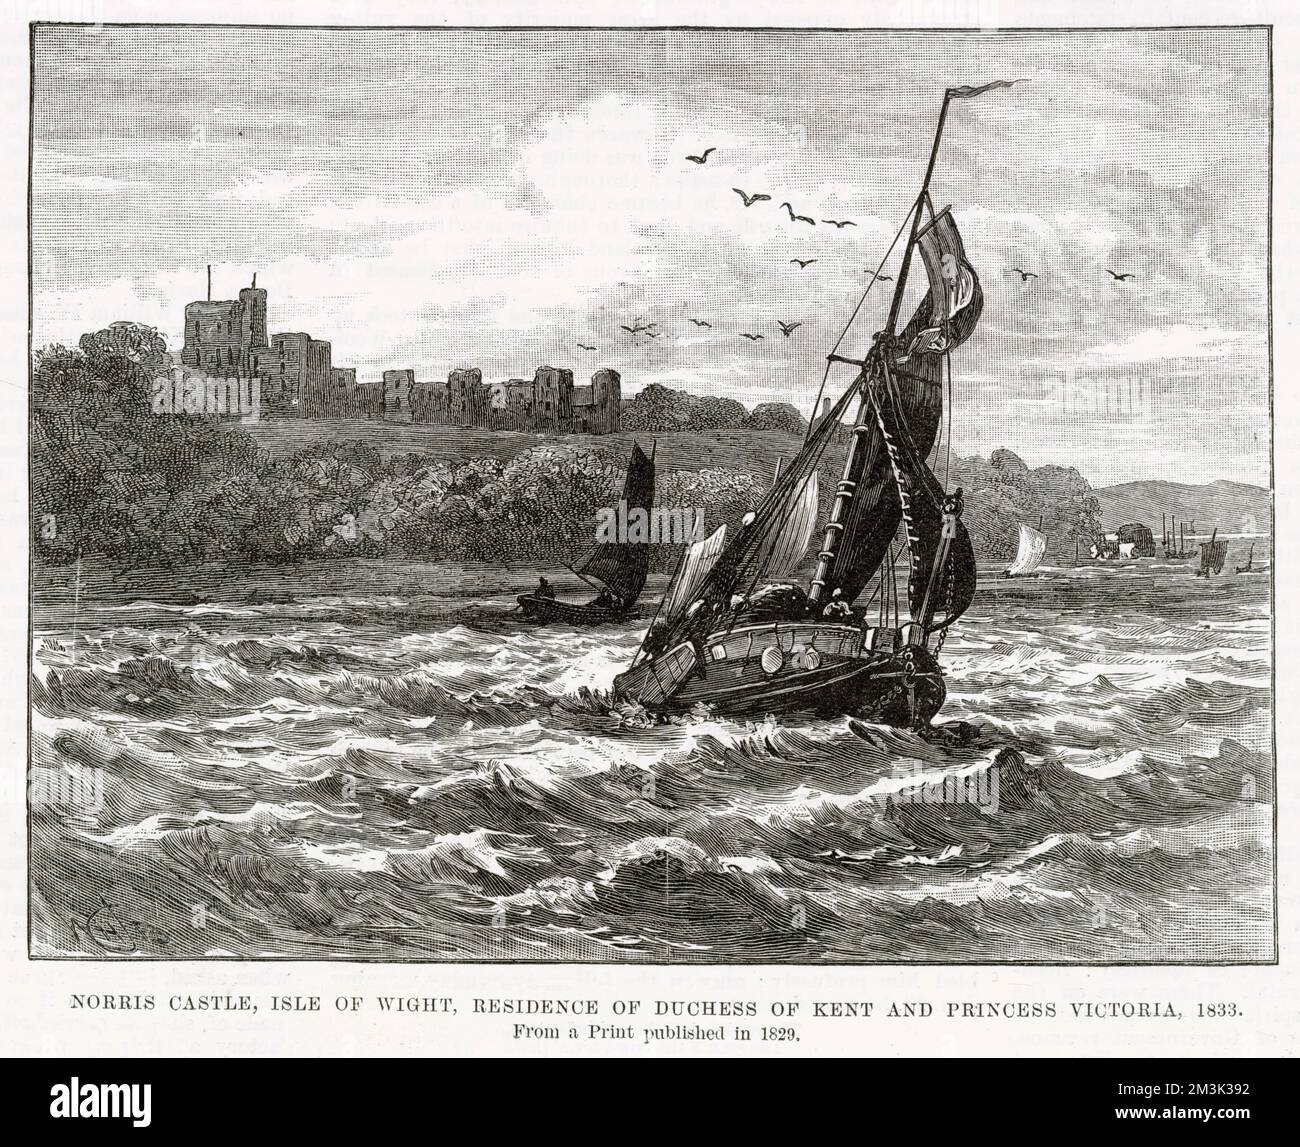 Una chiatta a vela nel Solent, con Norris Castello sull'isola di Wight sullo sfondo, 1833. Norris Castle fu la residenza della regina Vittoria (1819-1901) e di sua madre, la duchessa di Kent, a quel tempo. Foto Stock